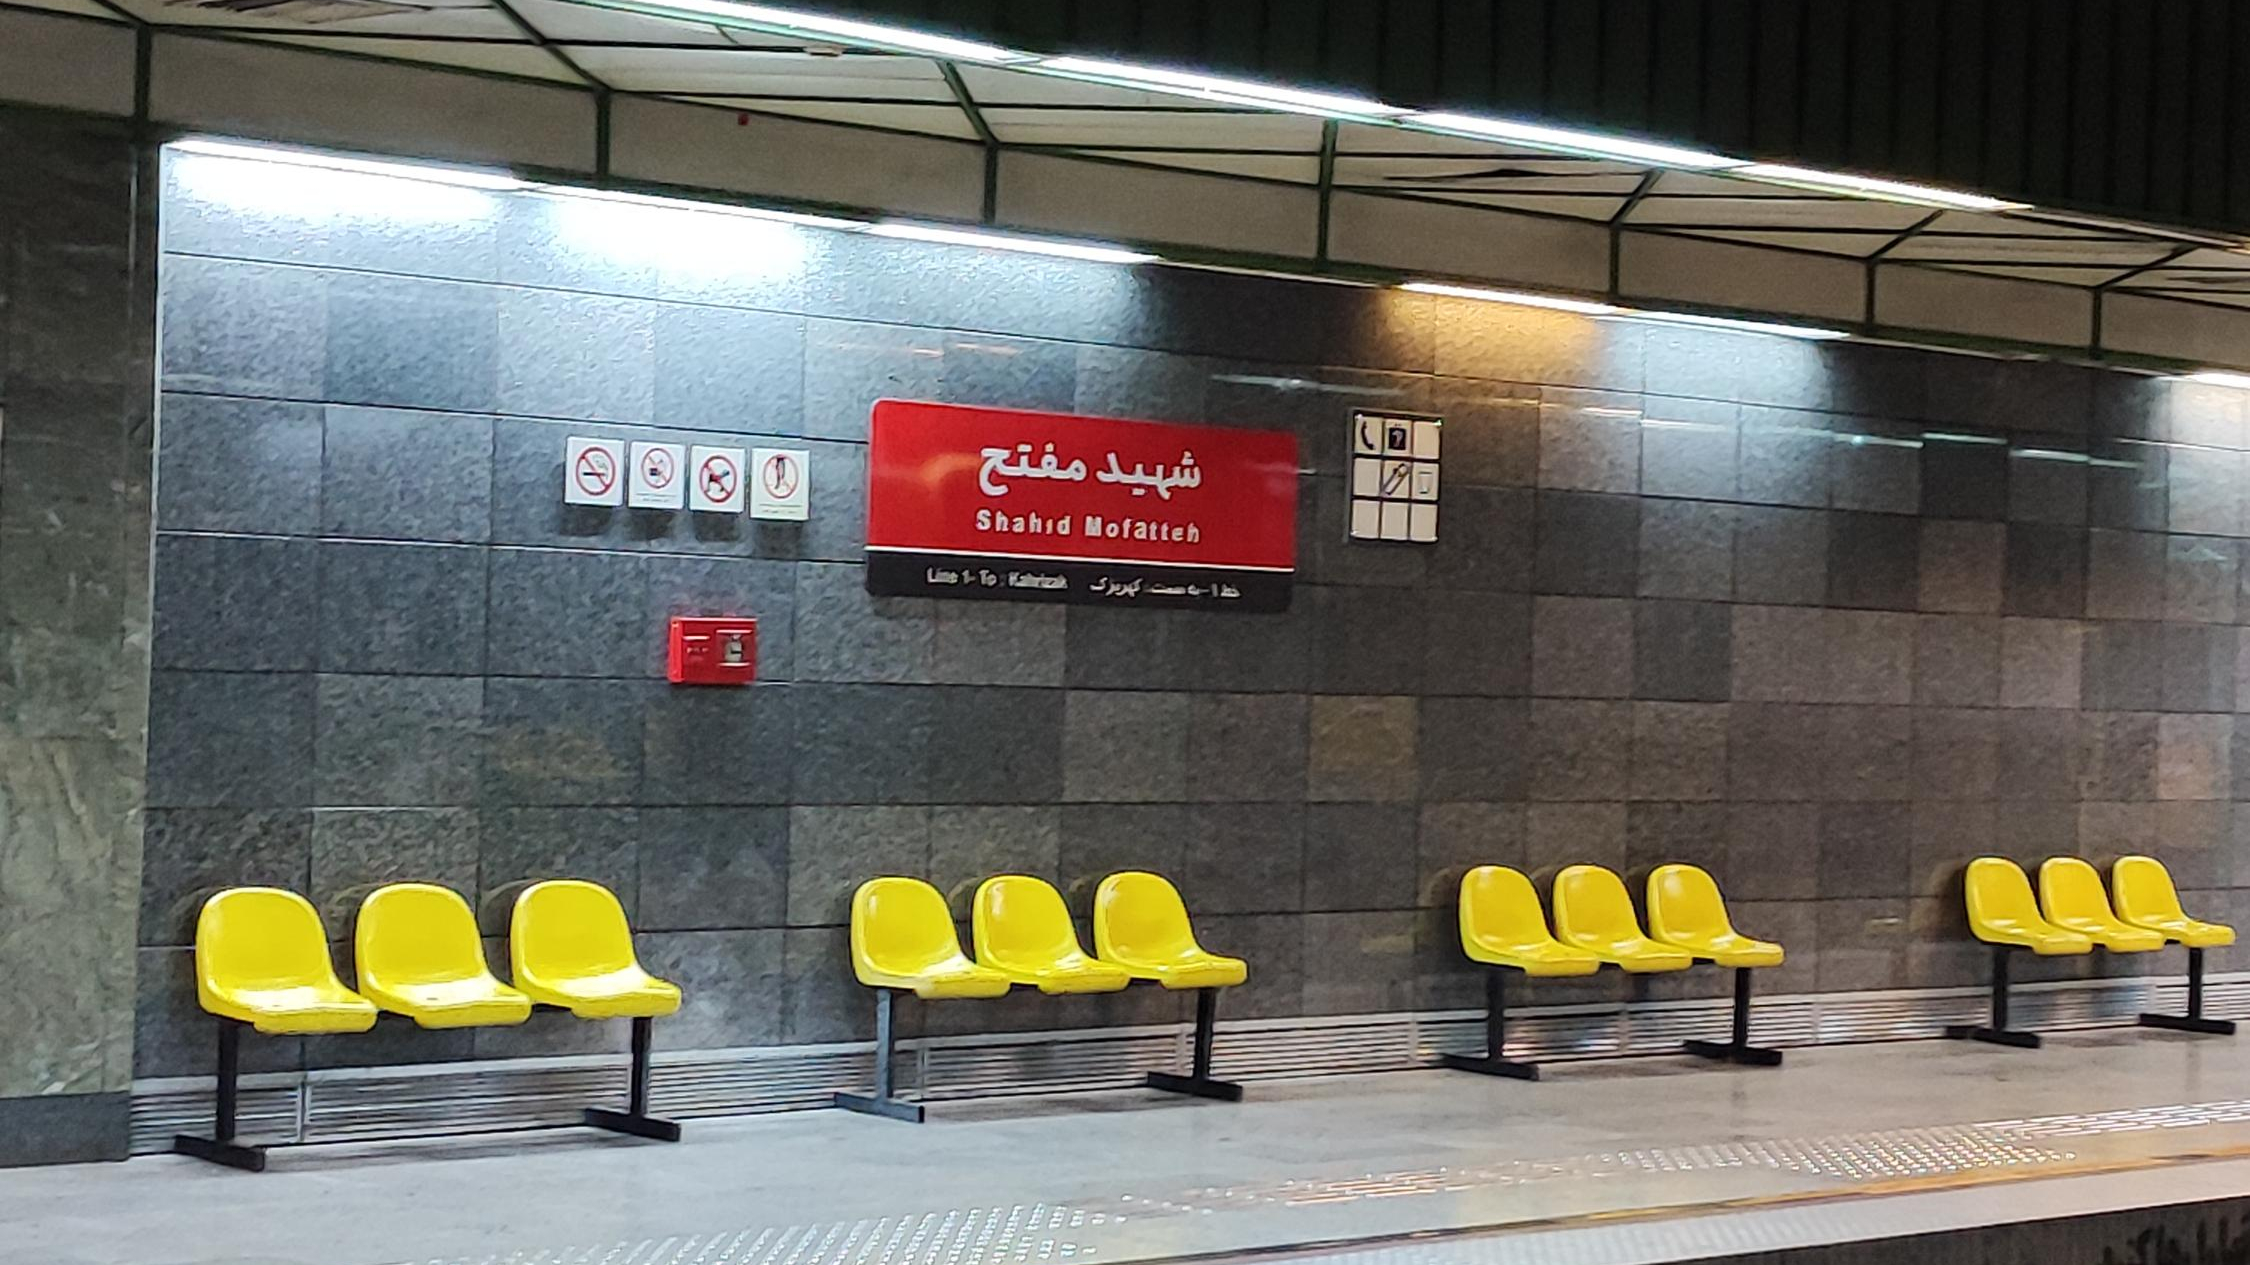 ایستگاه مترو شهید مفتح